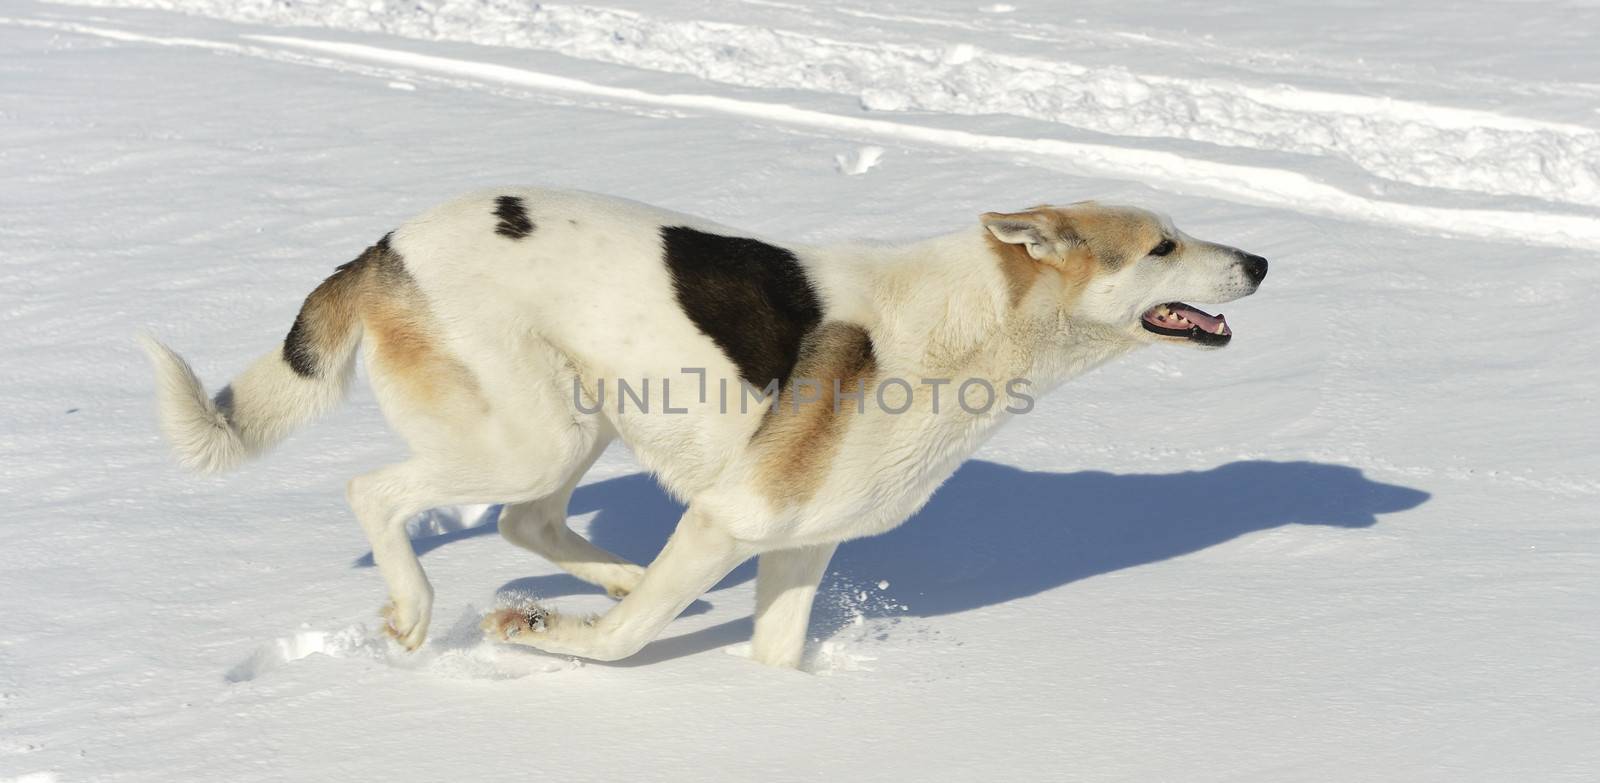 Running Dog by SURZ